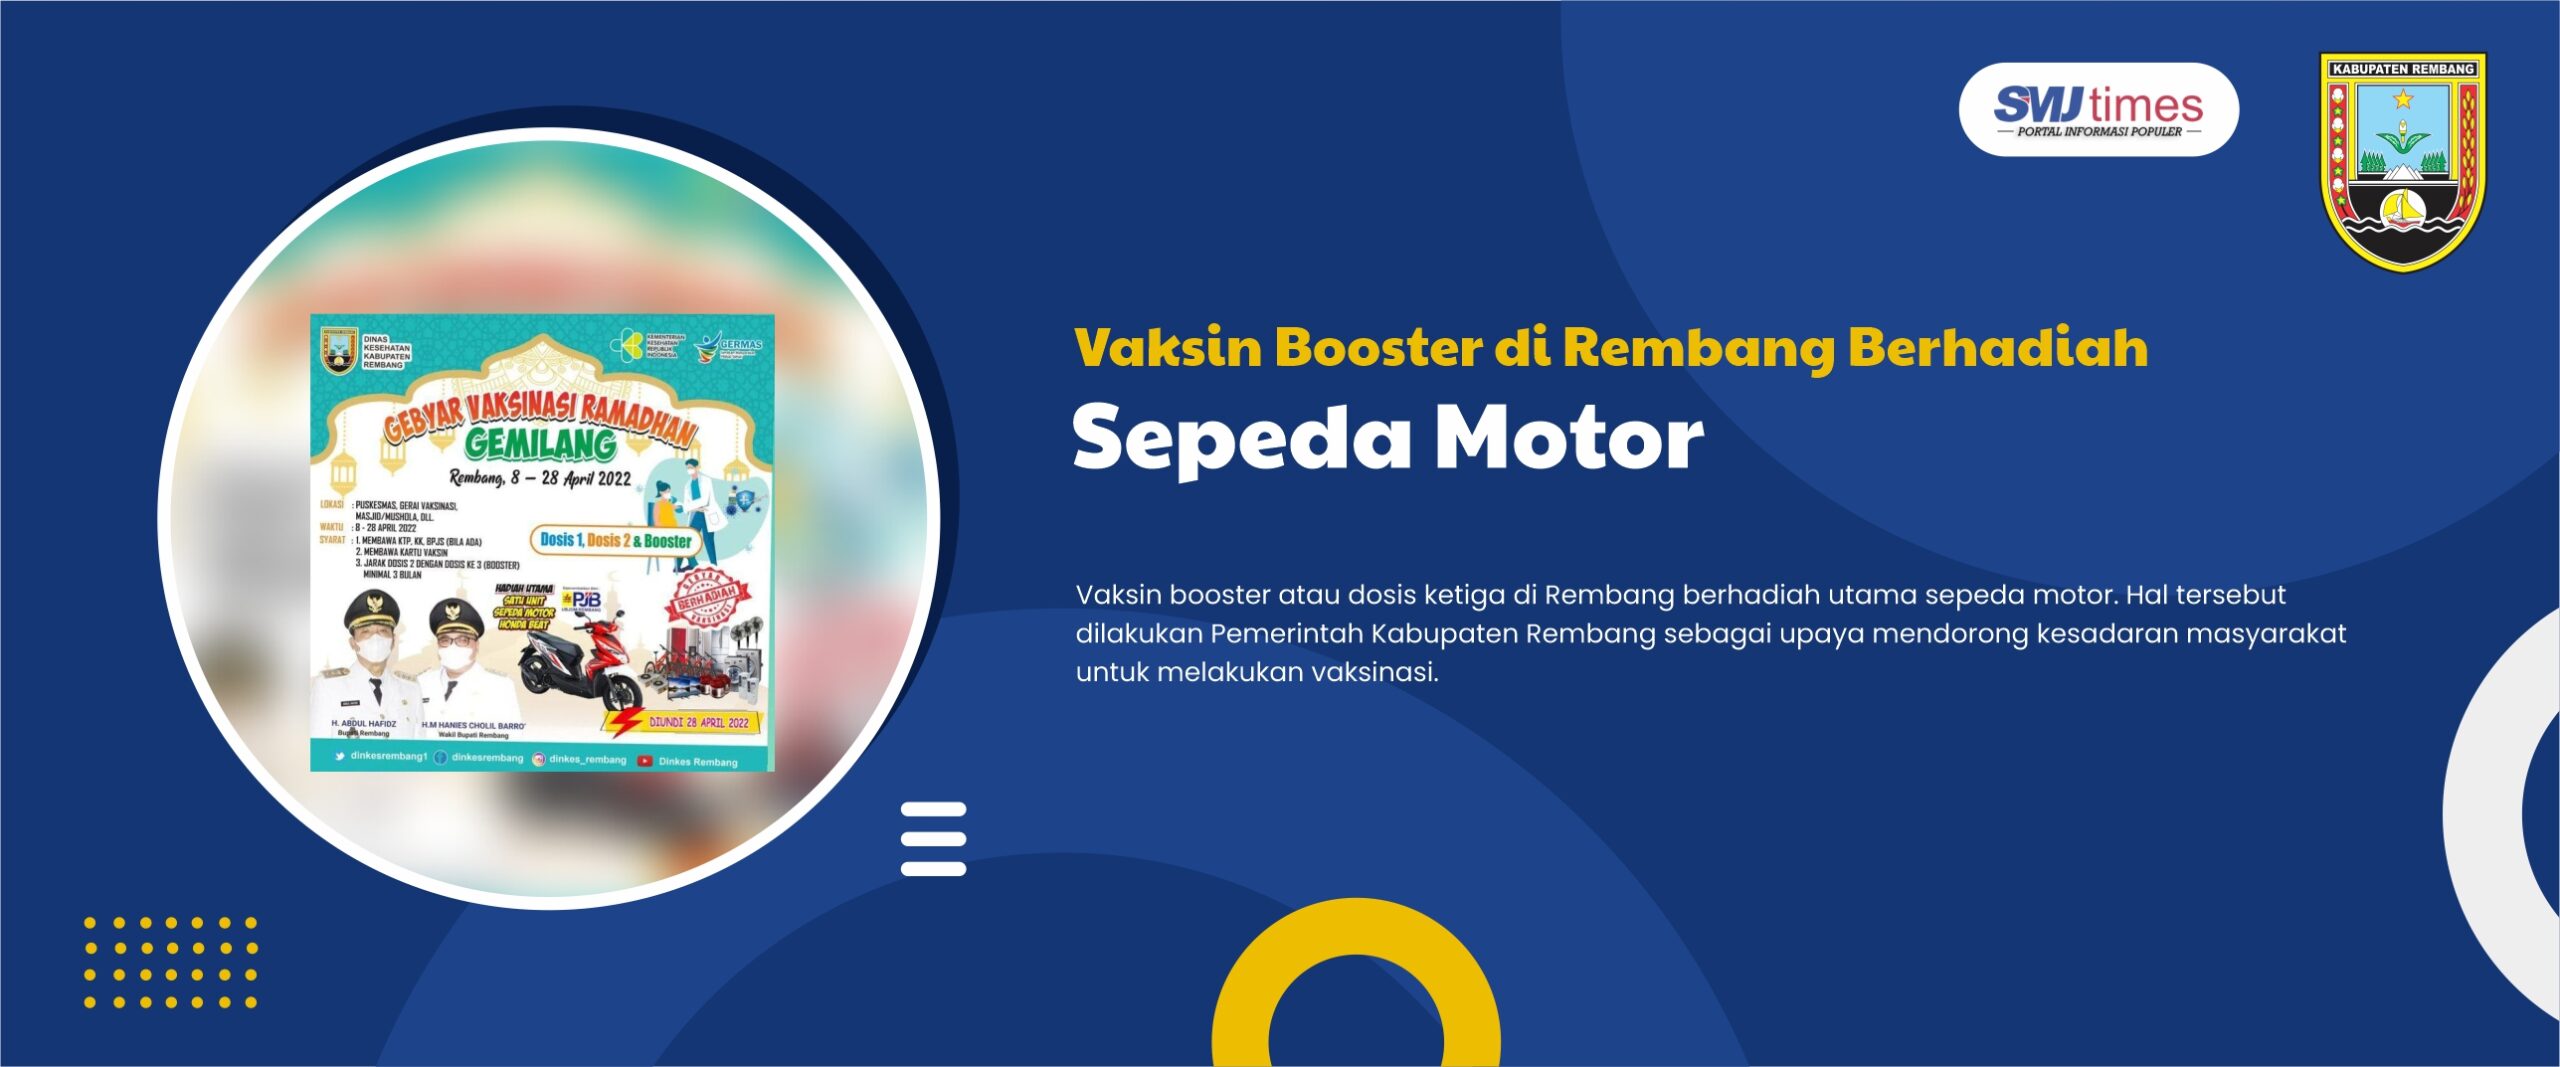 Vaksin Booster di Rembang Berhadiah Sepeda Motor